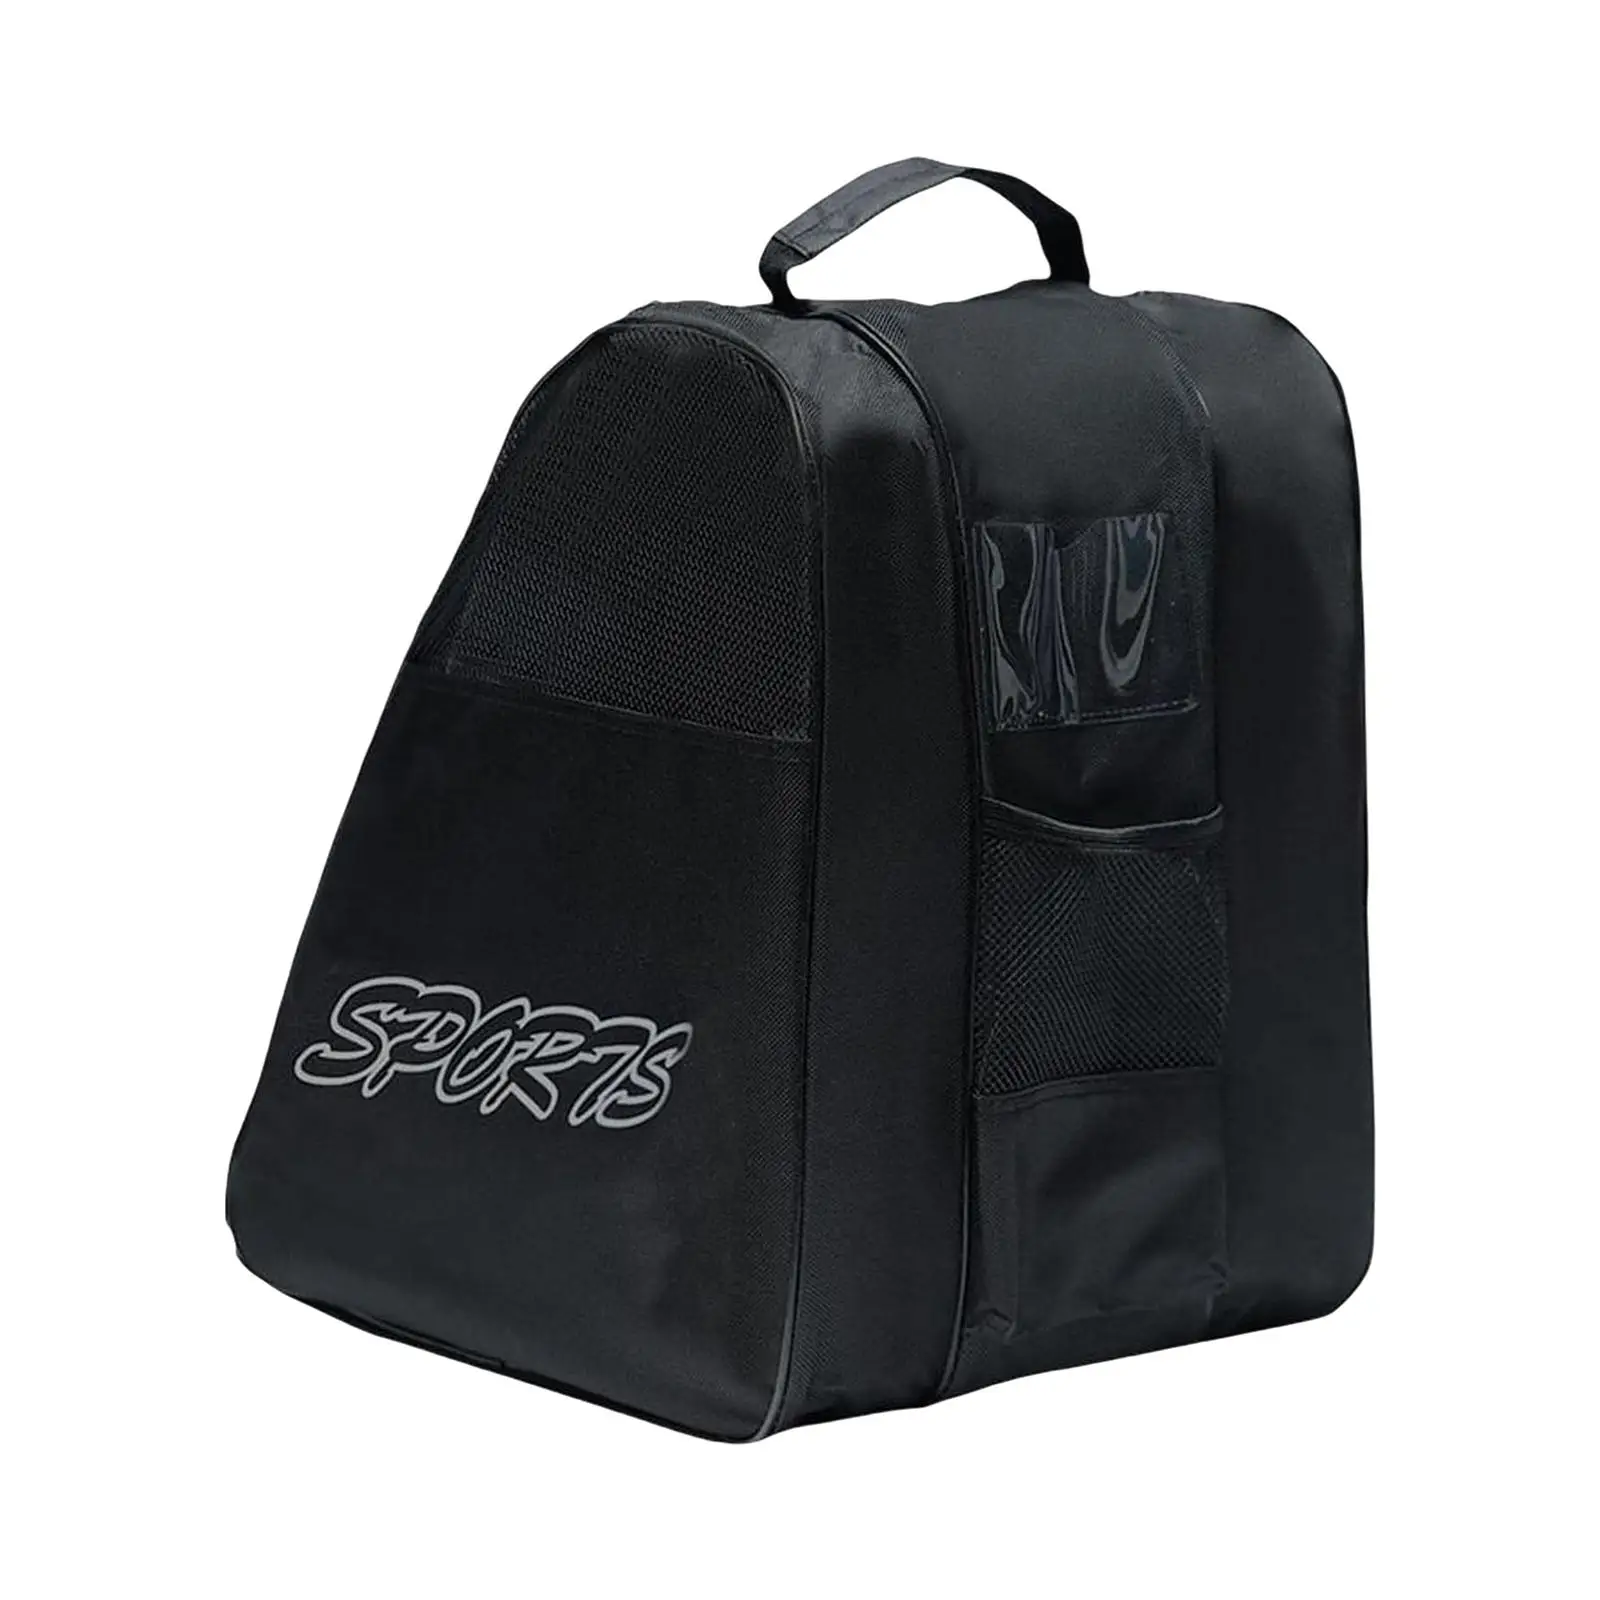 Roller Skate Bags Portable with Adjustable Shoulder Strap Large Capacity Roller Skate Carrier for Quad Skates Figure Skates